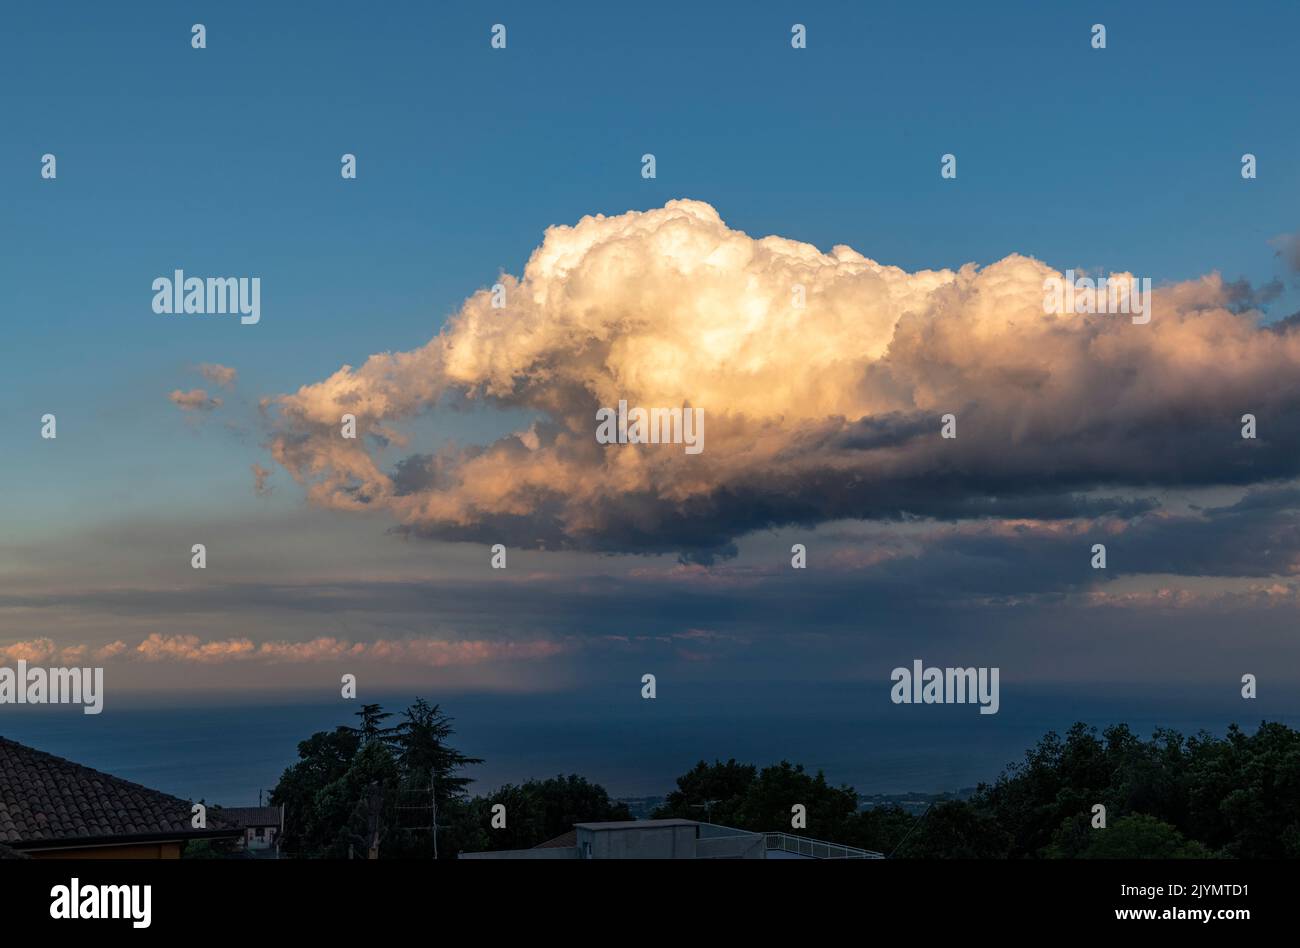 Eine seltsame Wolkenformation in Form einer riesigen Greifhand, gesehen vom sizilianischen Dorf Milo in der Nähe von Catania Stockfoto